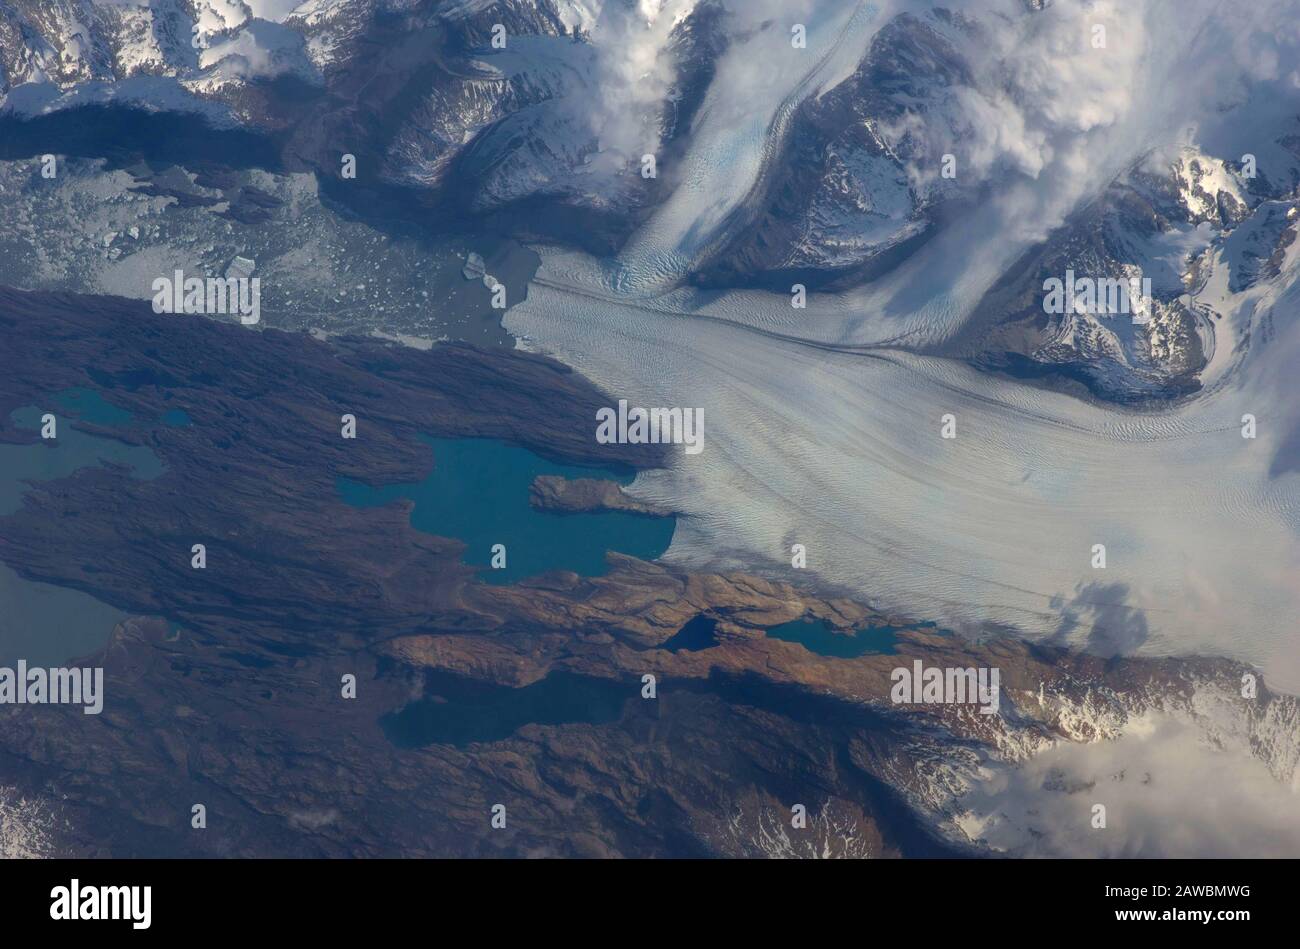 UPSALA GLACIER, ARGENTINA - 25 ottobre 2009 - Upsala Glacier, Argentina è presente in questa immagine della Stazione spaziale Internazionale. Il Patag Meridionale Foto Stock